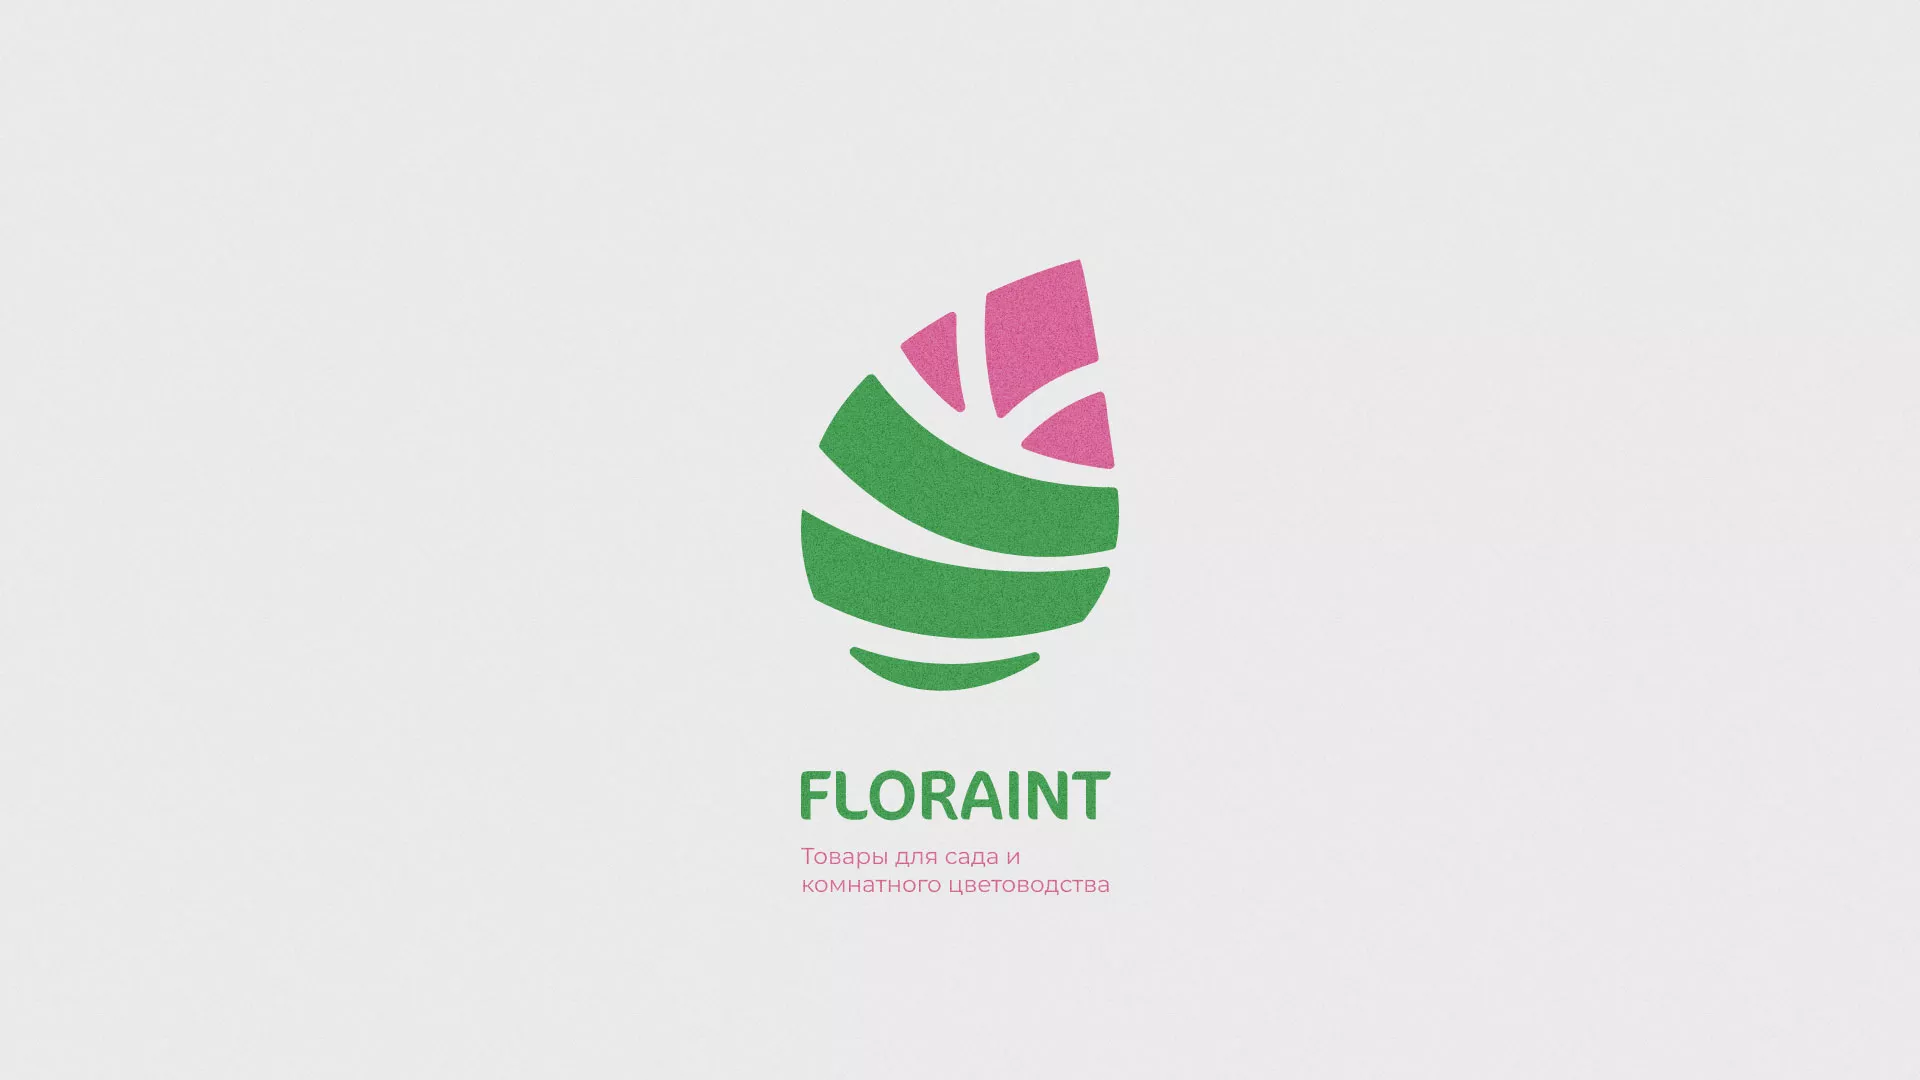 Разработка оформления профиля Instagram для магазина «Floraint» в Трёхгорном